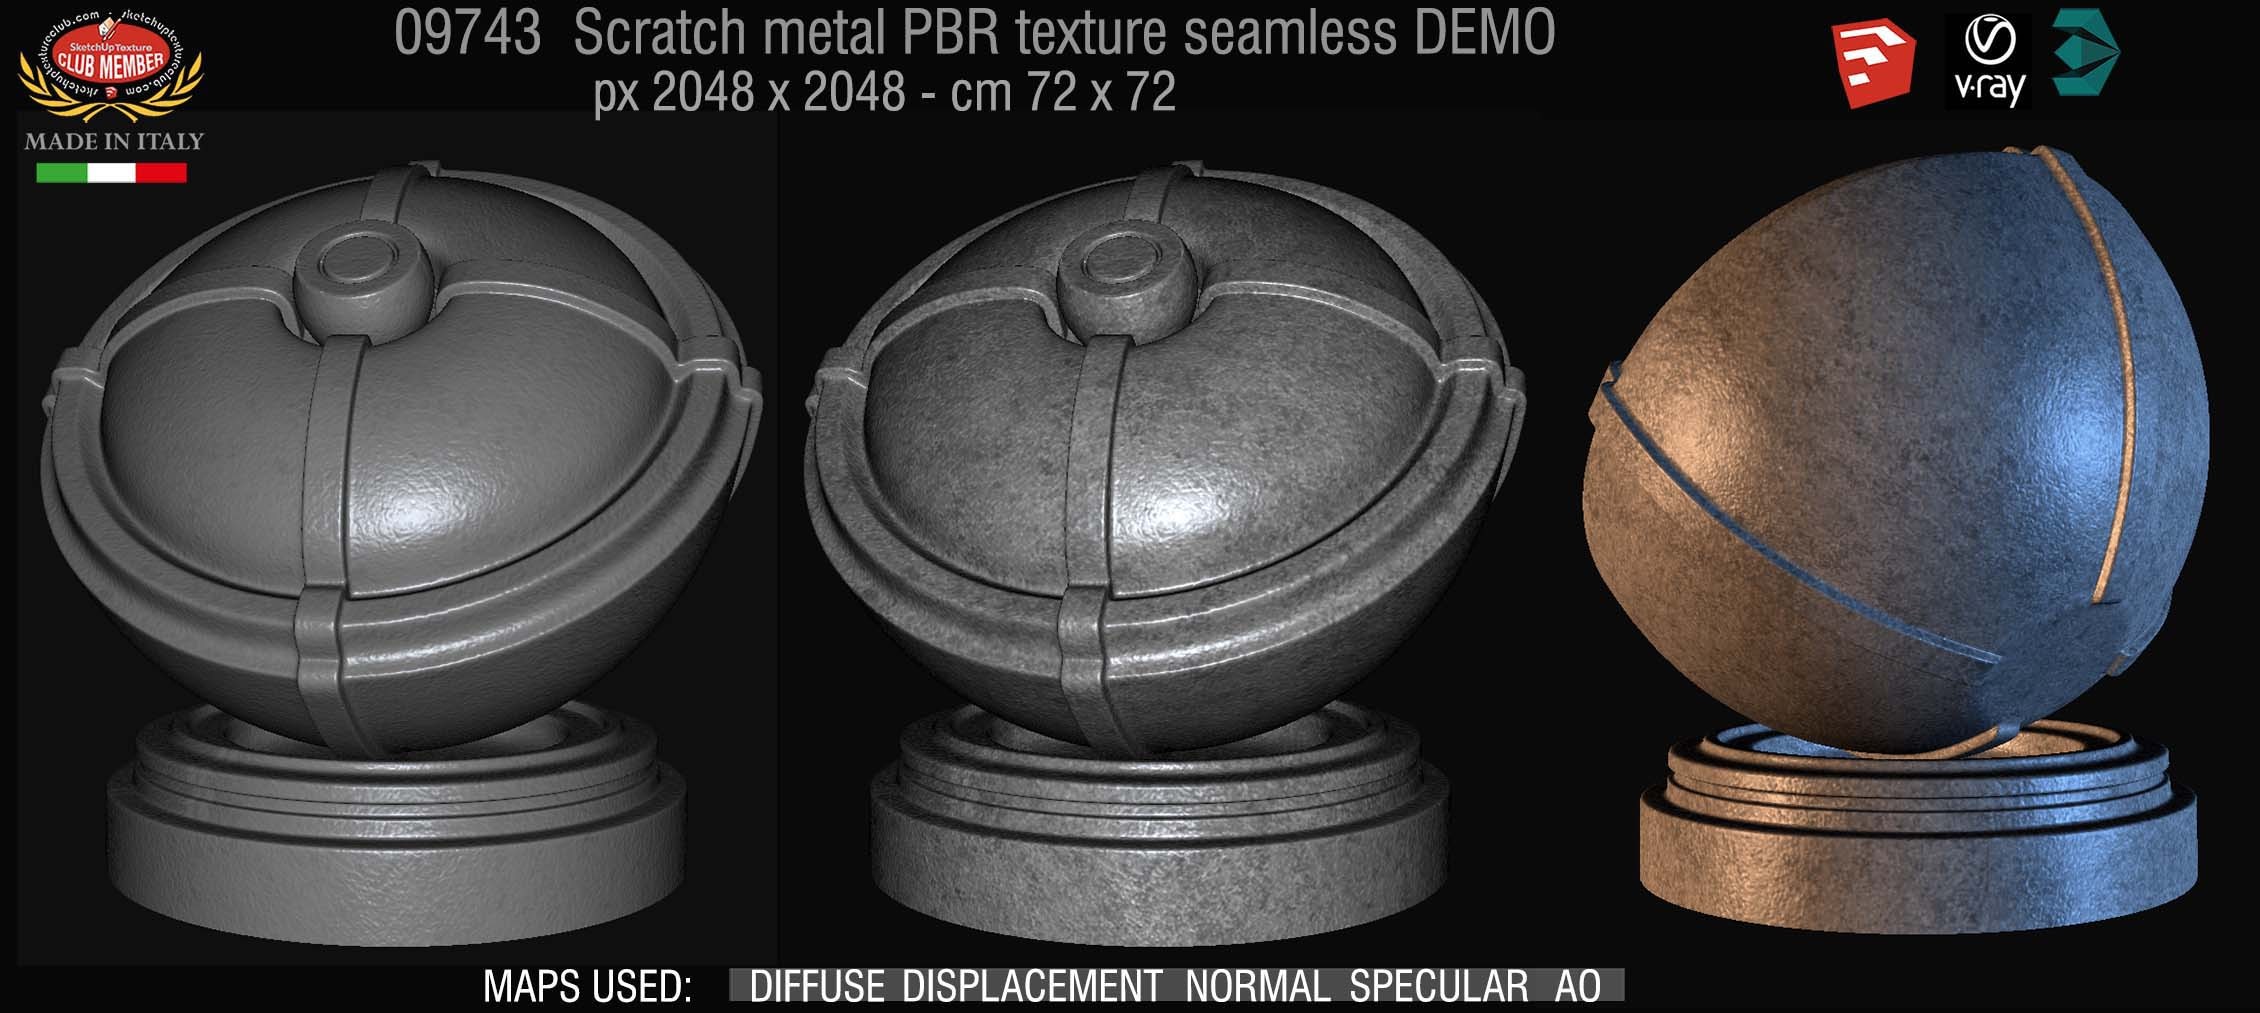 09743 Scratch metal PBR texture seamless DEMO